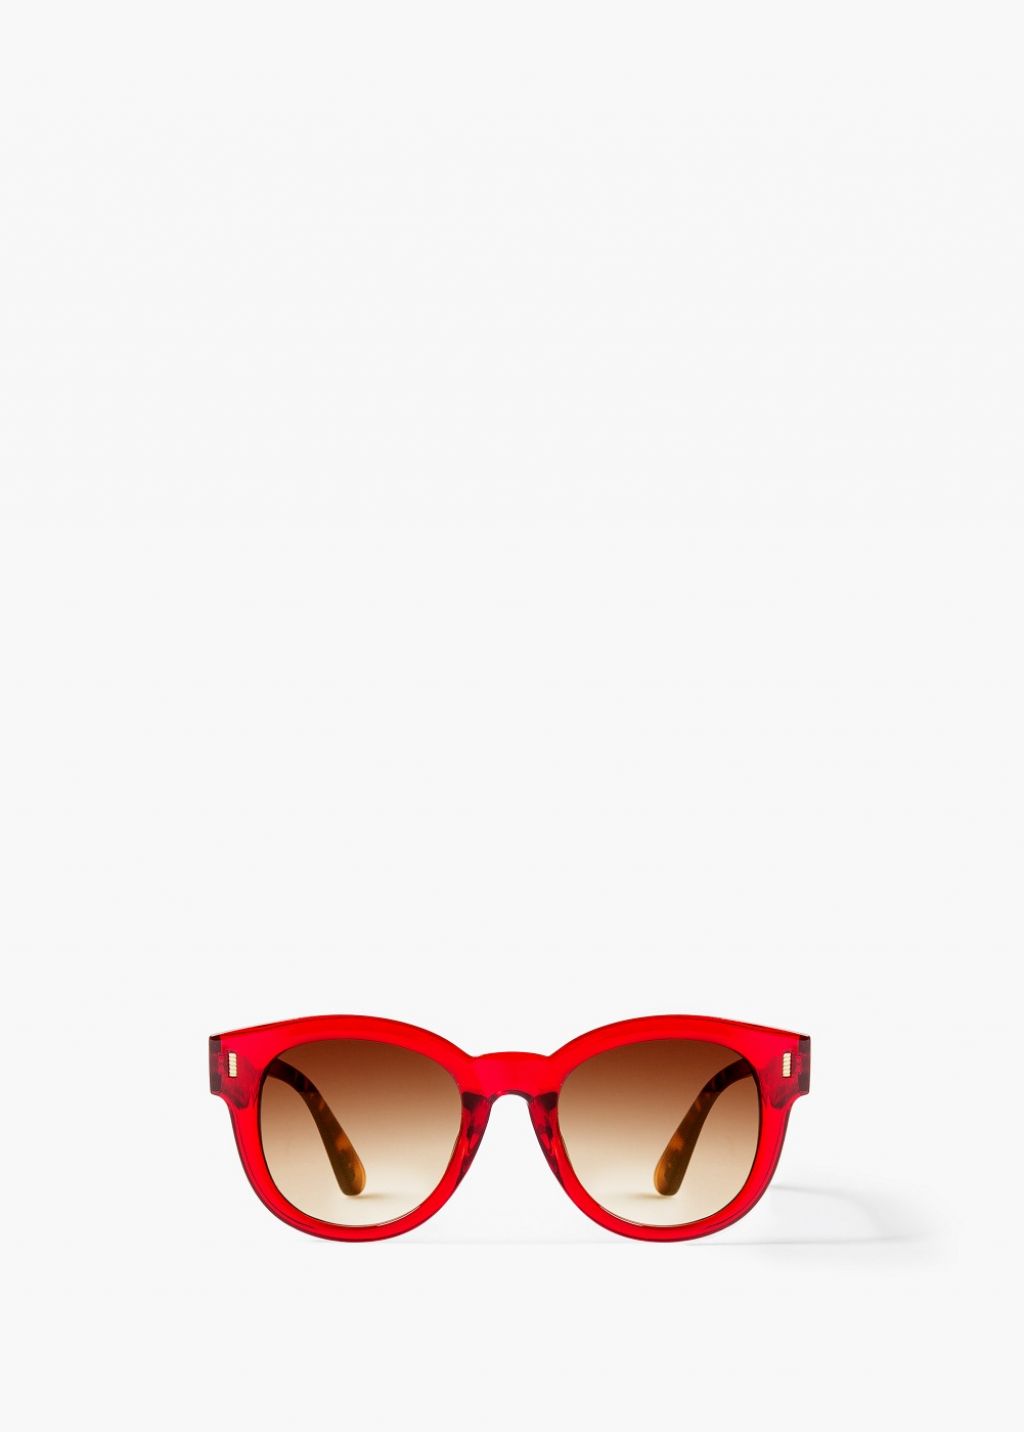 Modni izdelek dneva: sončna očala